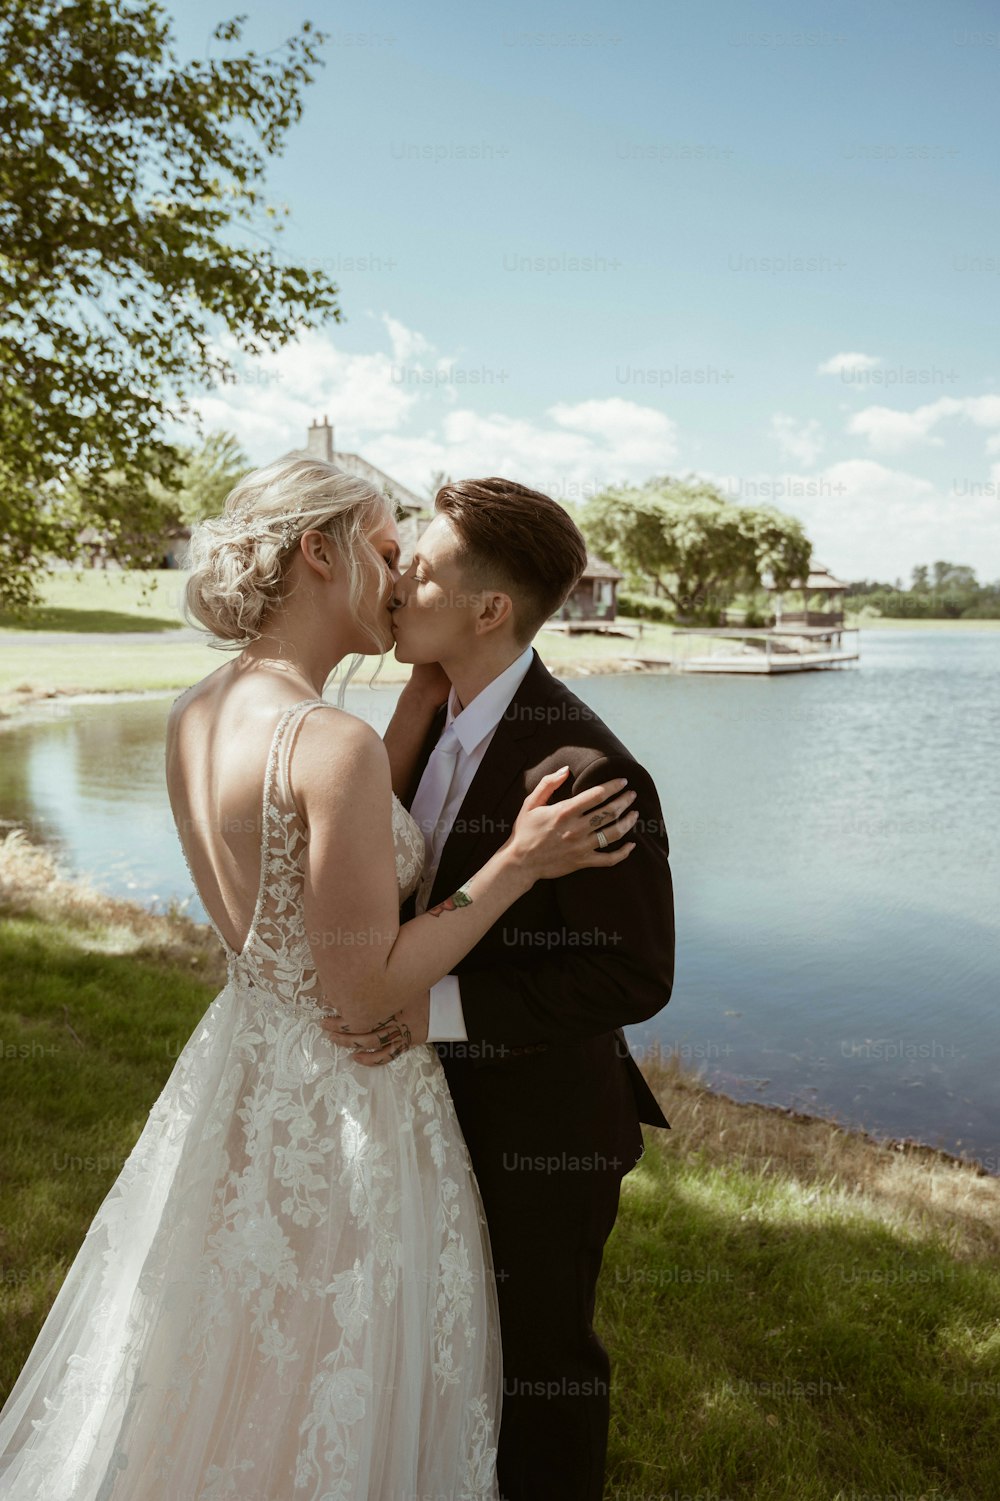 Una novia y un novio besándose frente a un lago